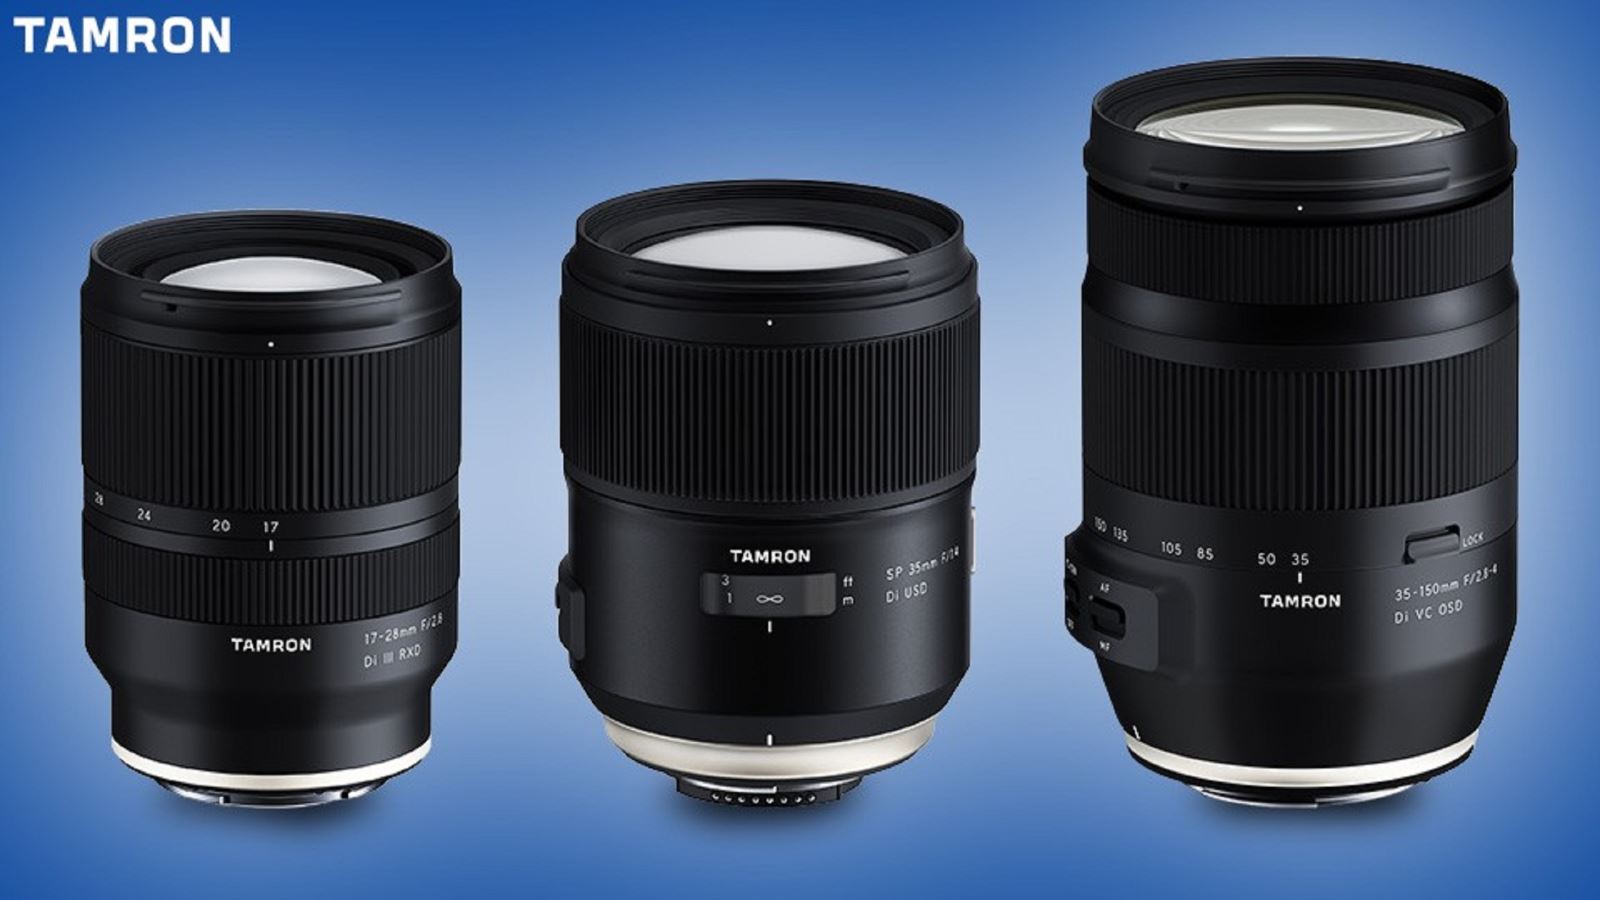 Tamron tiết lộ ống kính 35-150mm và 35mm cho FF DSLR, 17-28mm cho FF Mirrorless